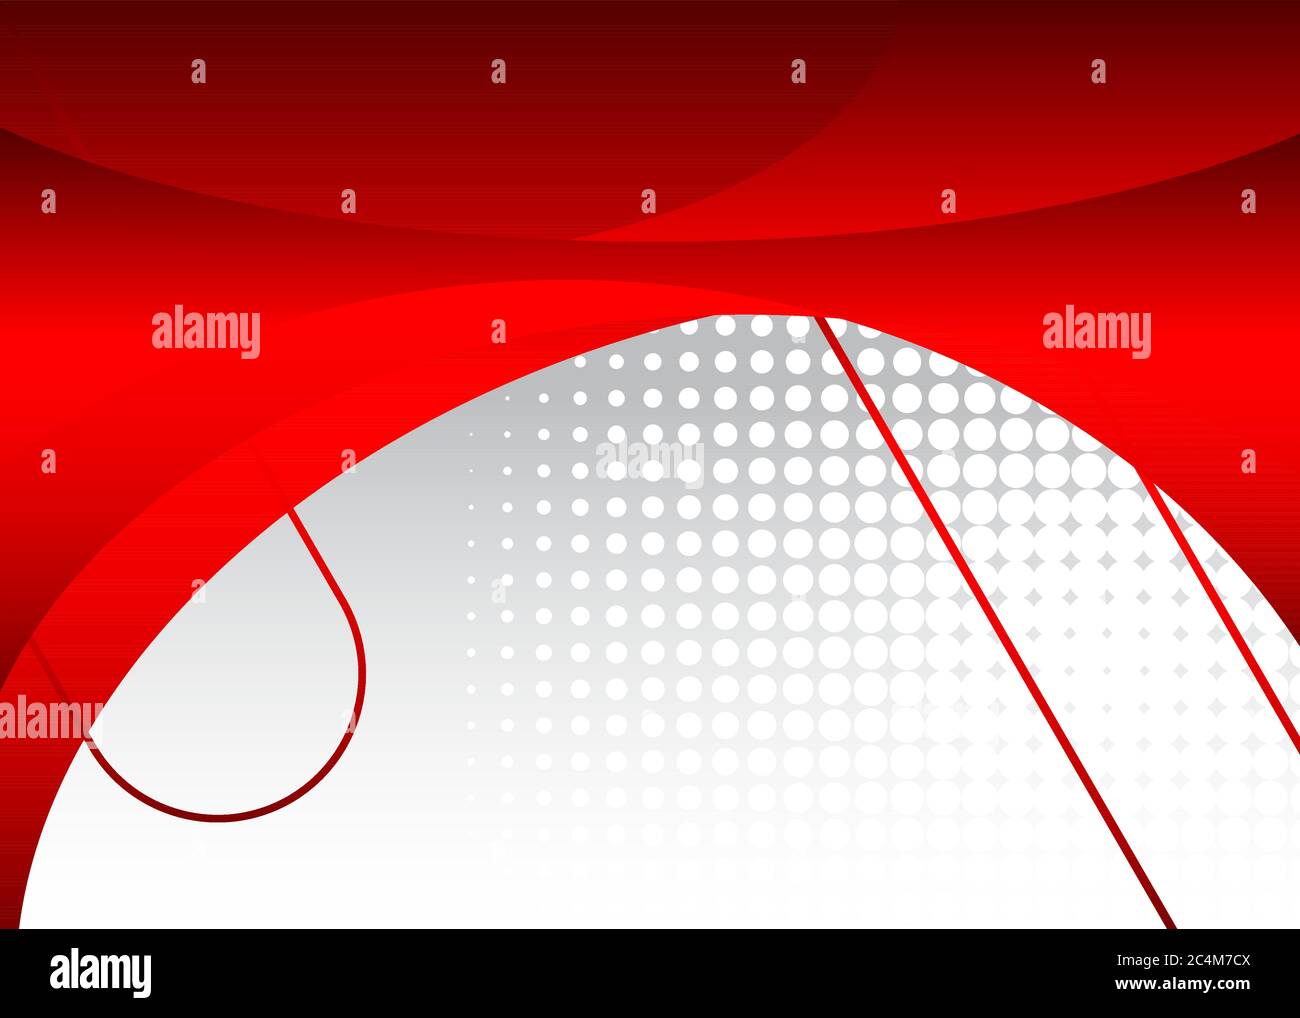 Grafica moderna con linee curve per bacheca, per la progettazione di testi e messaggi, illustrazione vettoriale astratta. Illustrazione Vettoriale